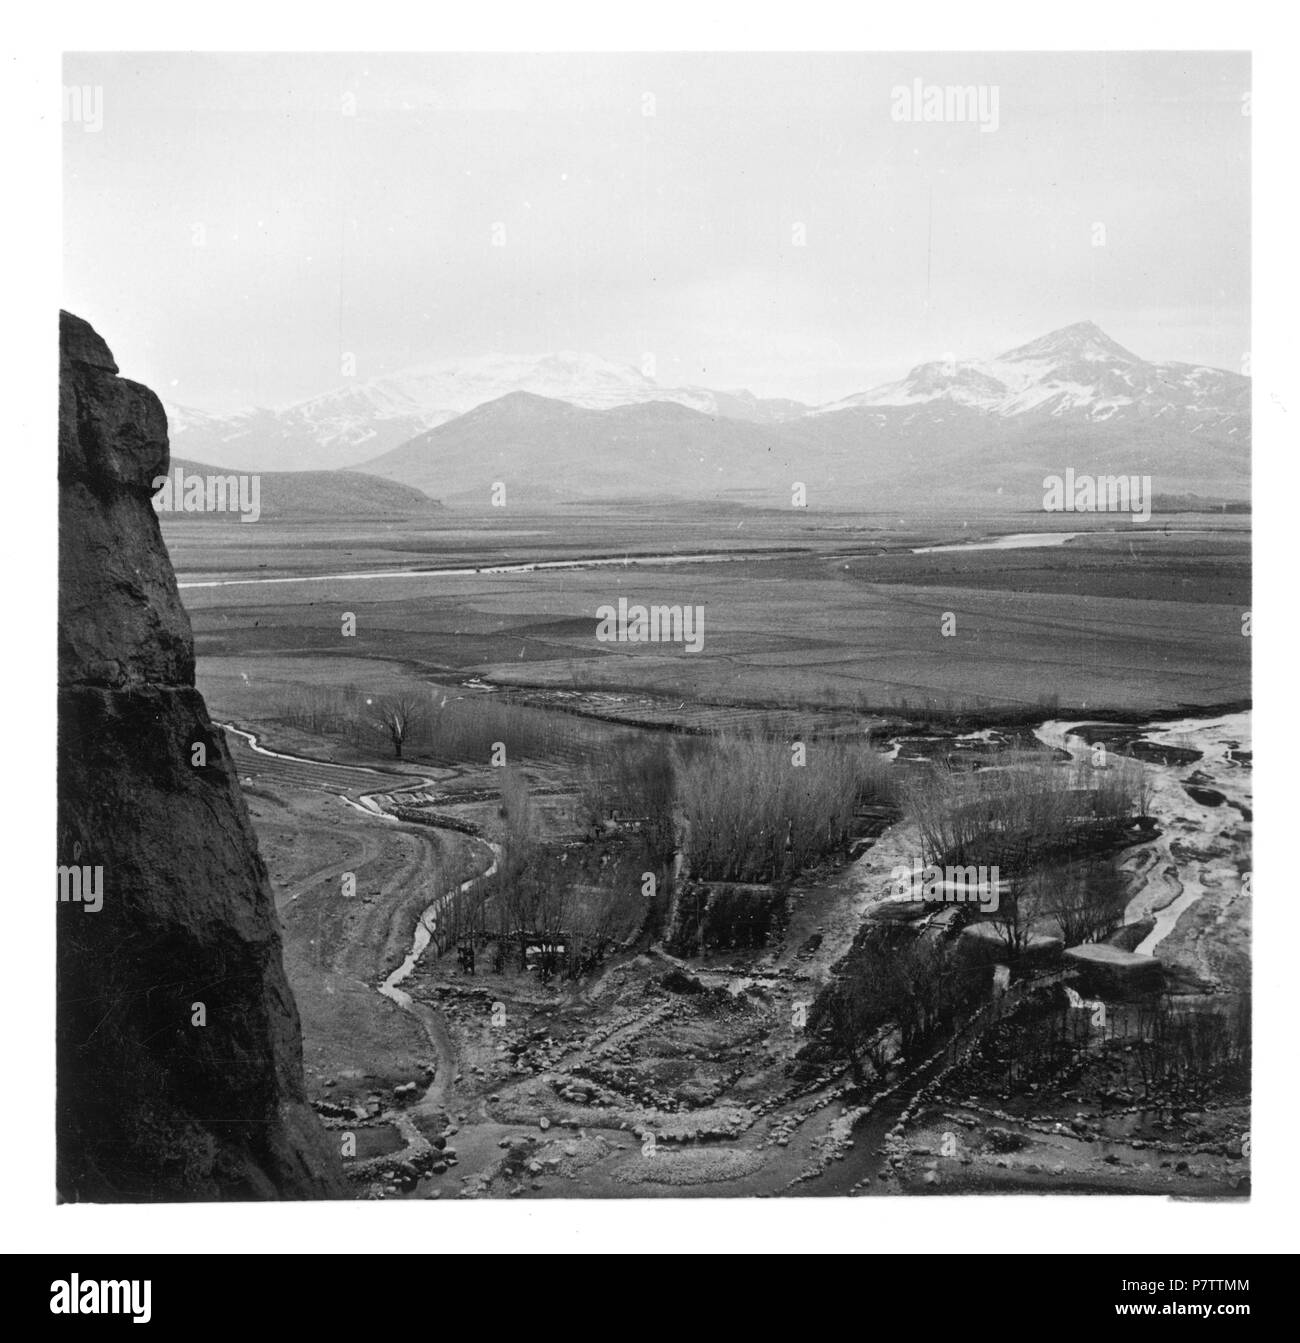 Persien, Bisutun : Landschaft ; Karge Ebene mit Fluss im Hintergrund Bergketten. à partir de 1933 jusqu'à 1934 76 CH-NB - Persien, Bisutun- Landschaft - Annemarie Schwarzenbach - SLA-Schwarzenbach-A-5-04-030 Banque D'Images